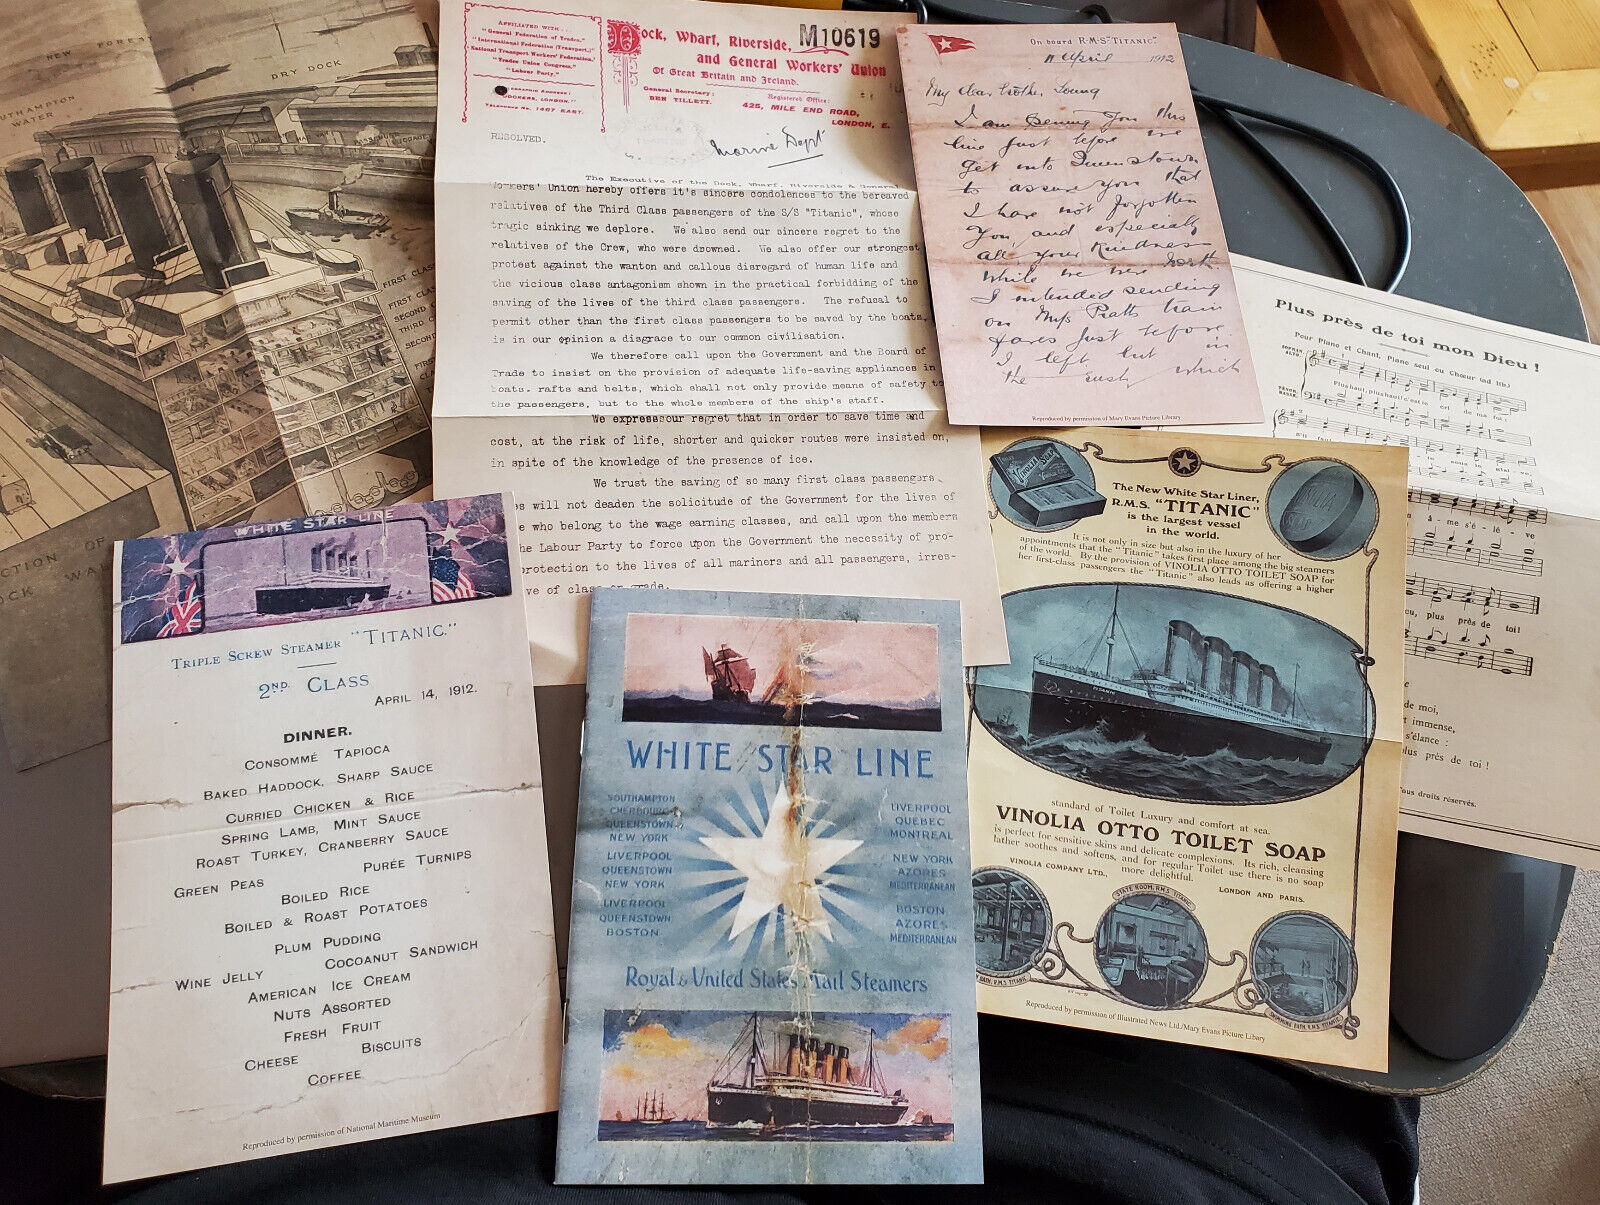 7 TITANIC Memrobilia Set Menu Advert Sheet Music Letters Booklet Photos Antique